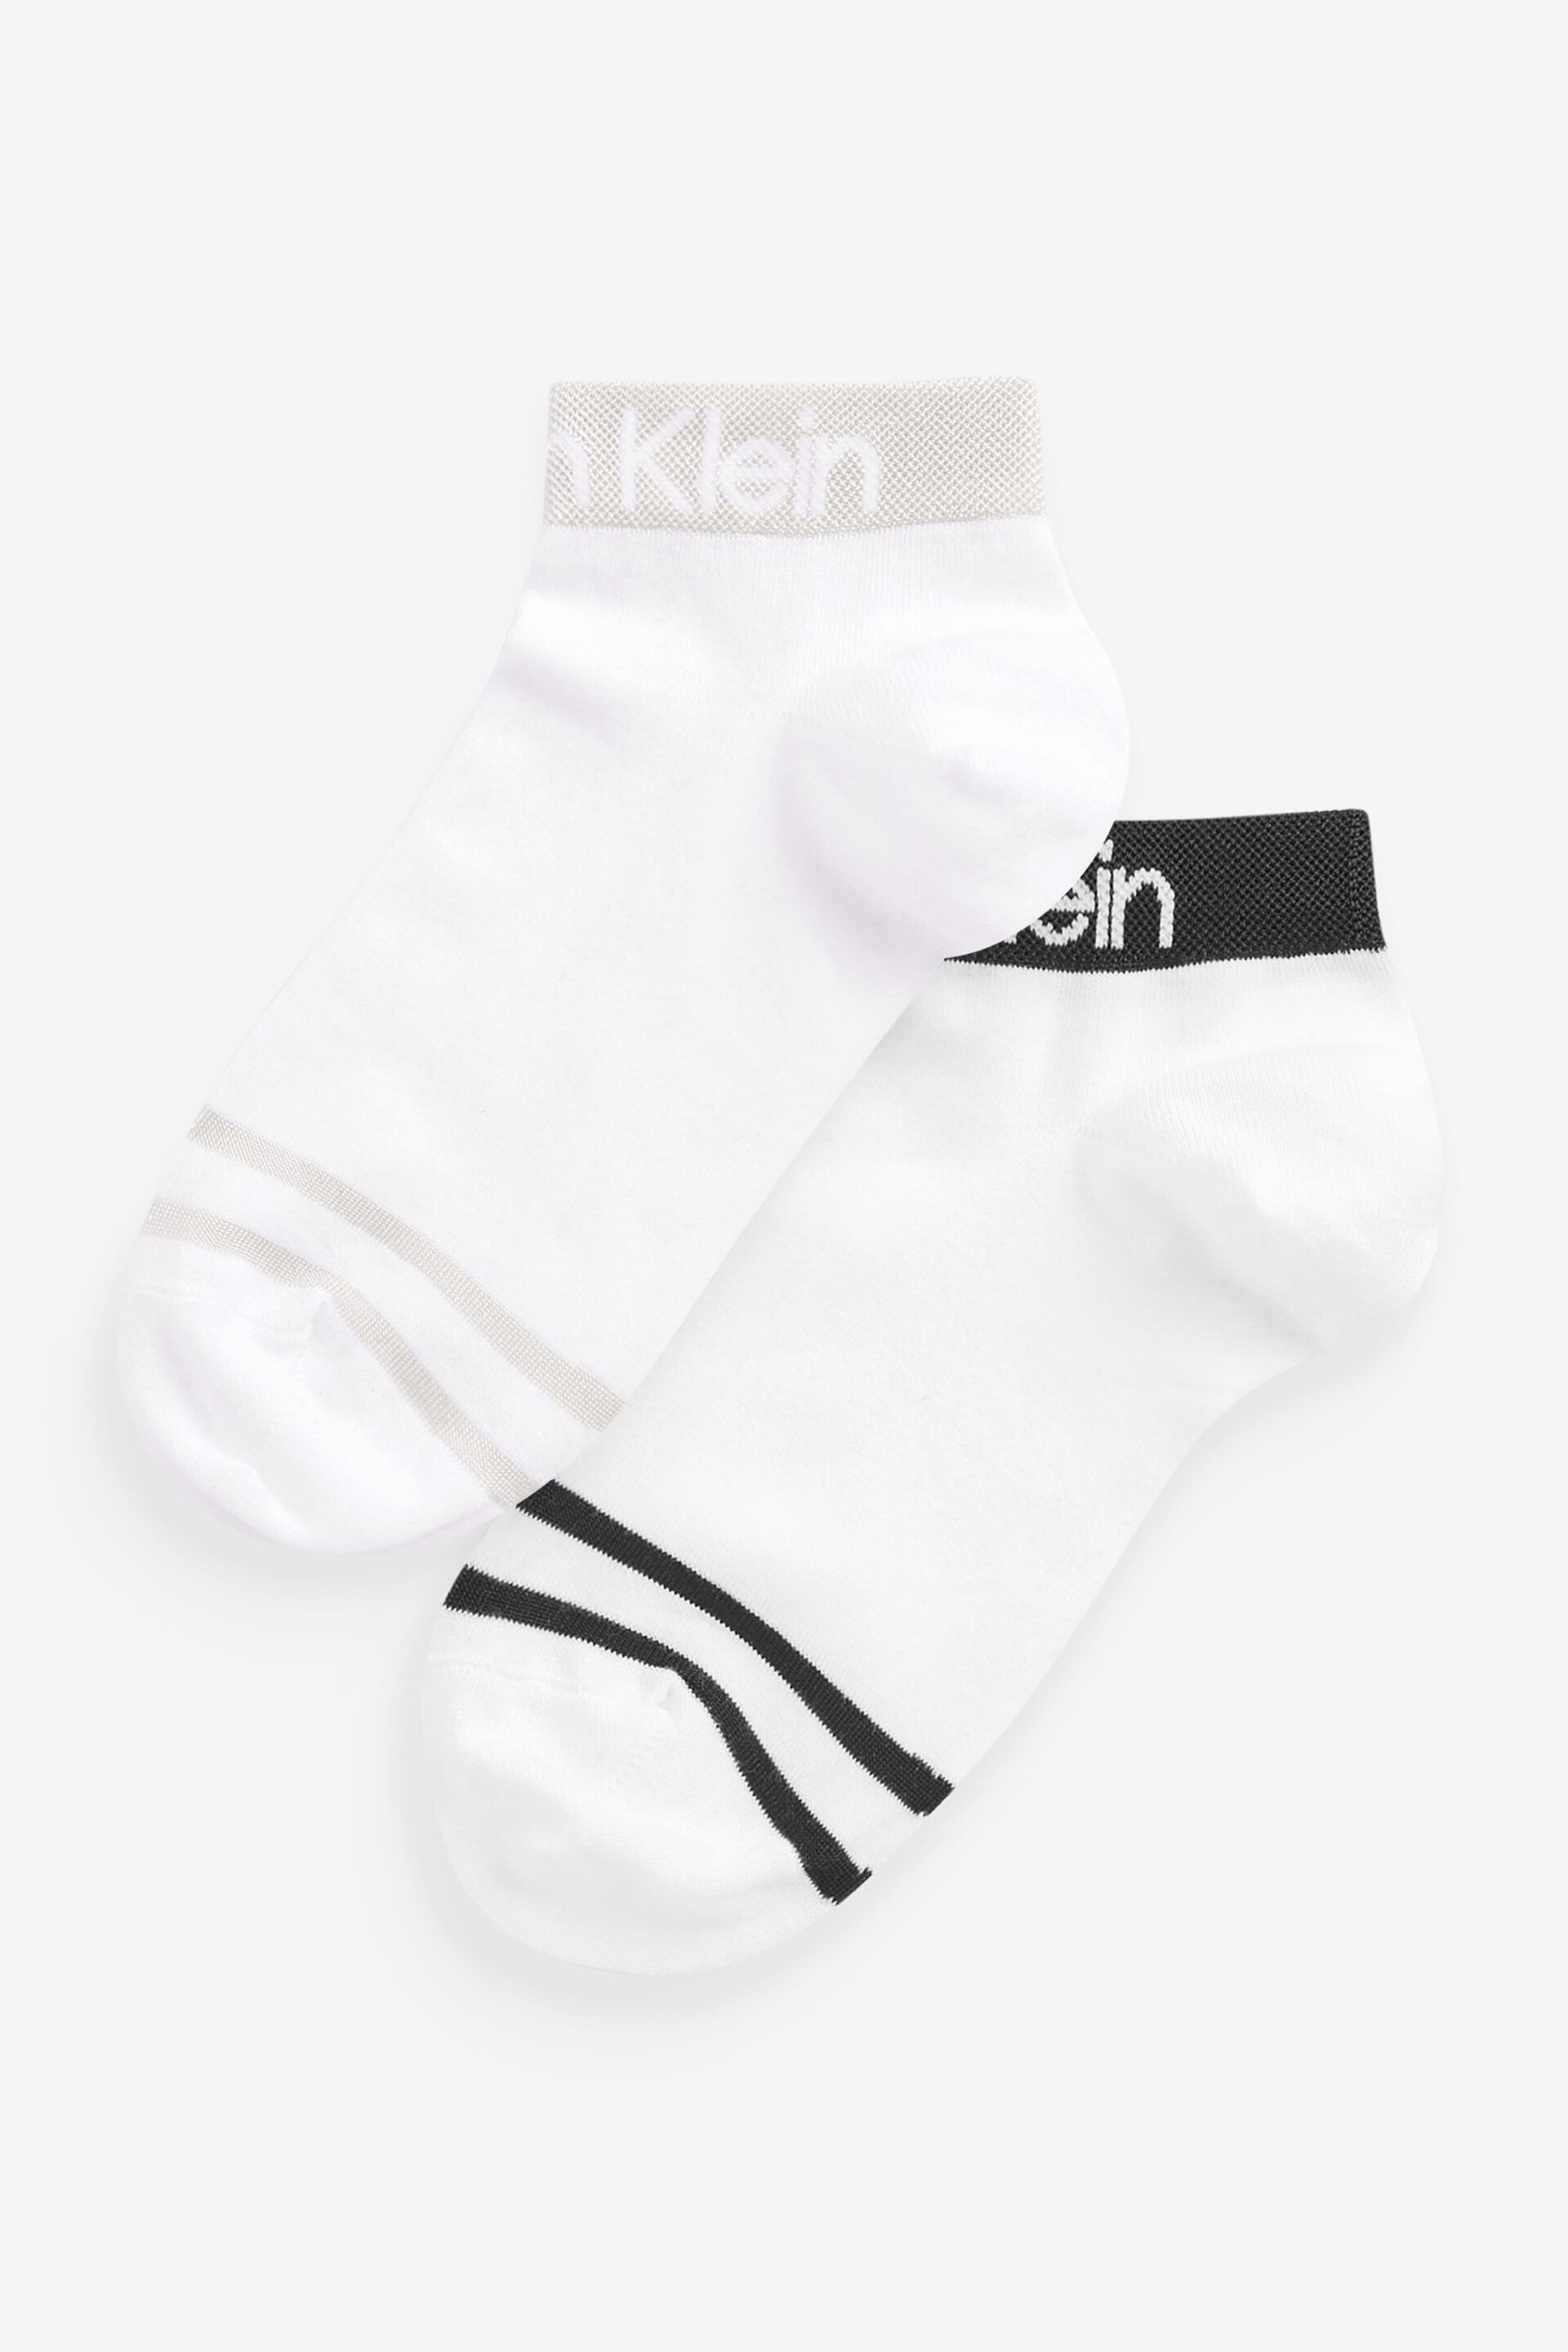 Calvin Klein White Logo Socks 2 Pack - Image 2 of 4